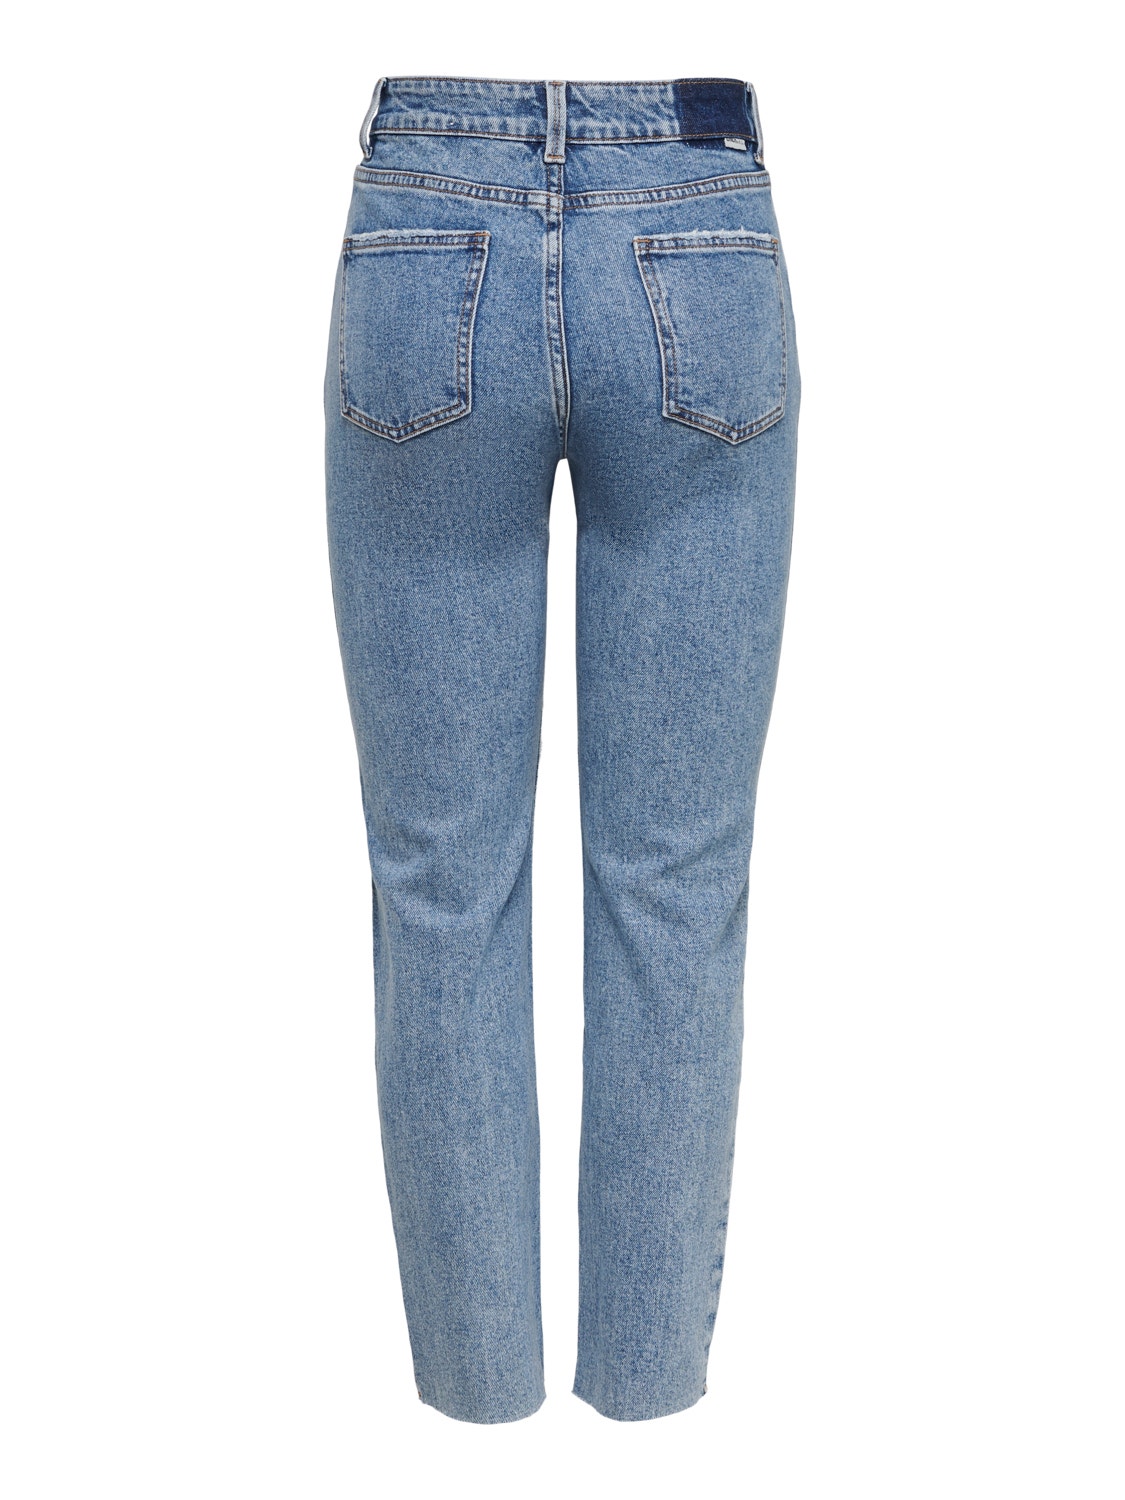 ONLY Gerade geschnitten Hohe Taille Offener Saum Jeans -Light Blue Denim - 15229737